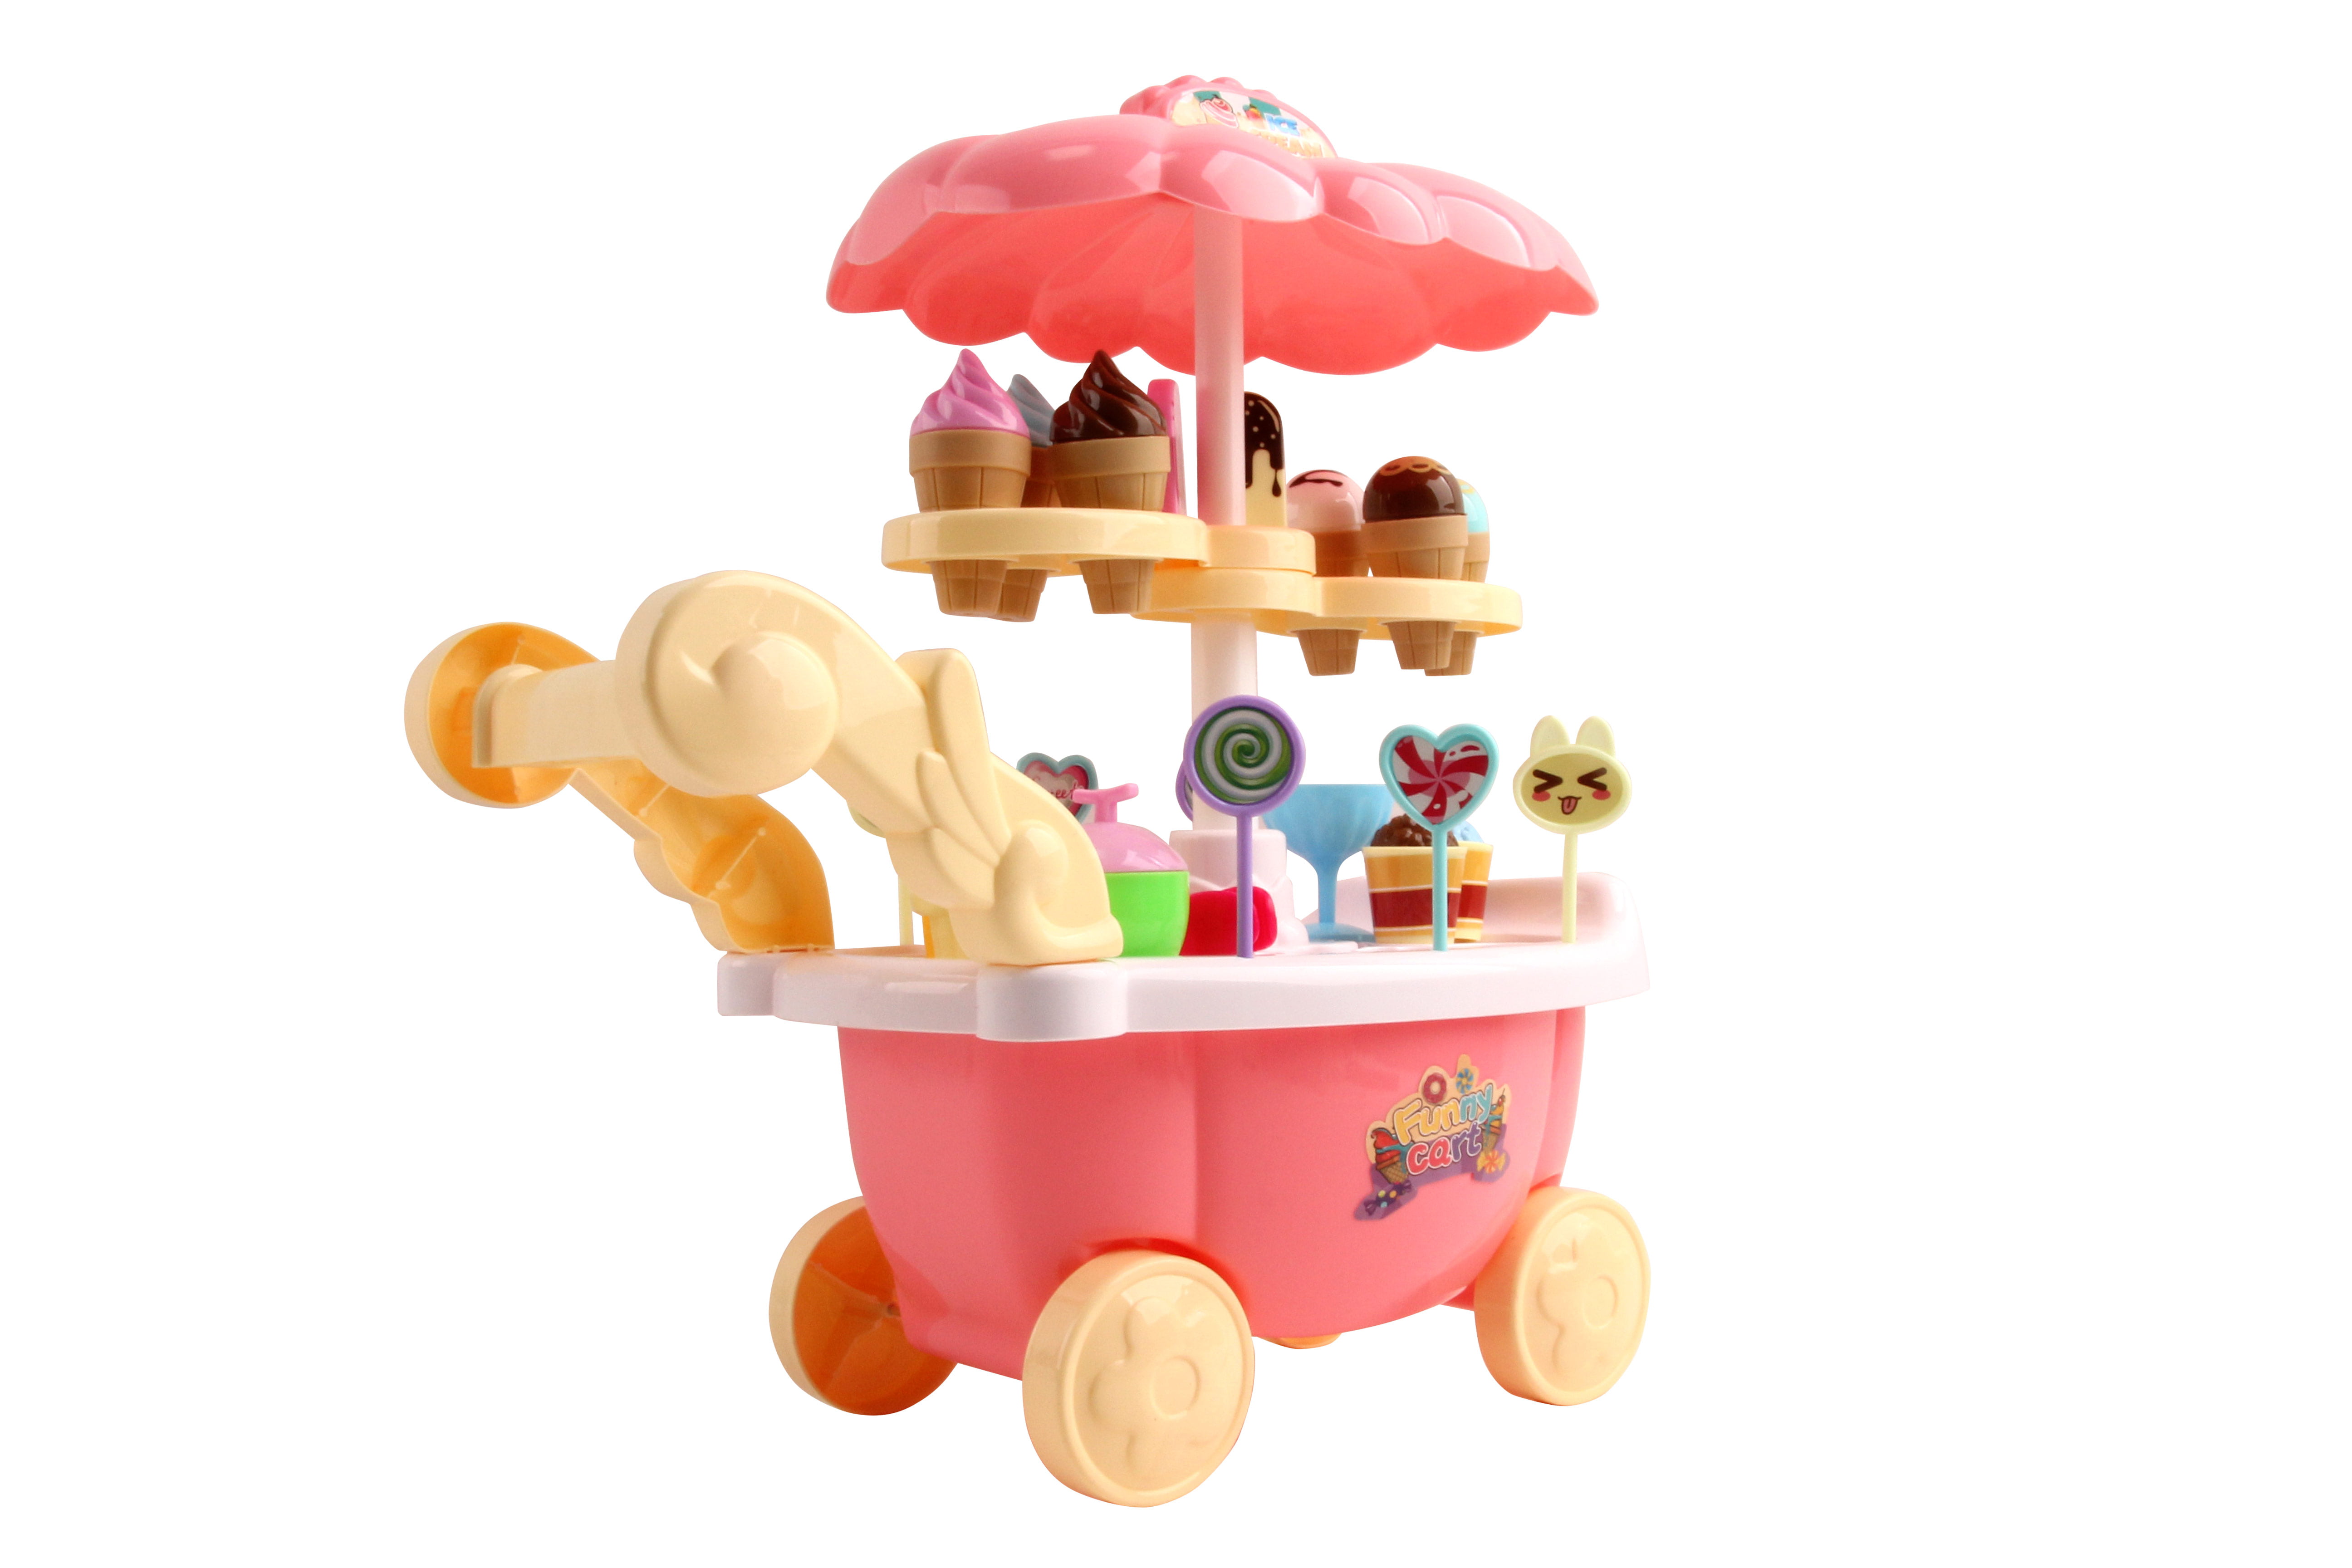 Vokodo Ice Cream Cart 31 Piece Dessert Candy Kitchen Toy Set With Music TK-10